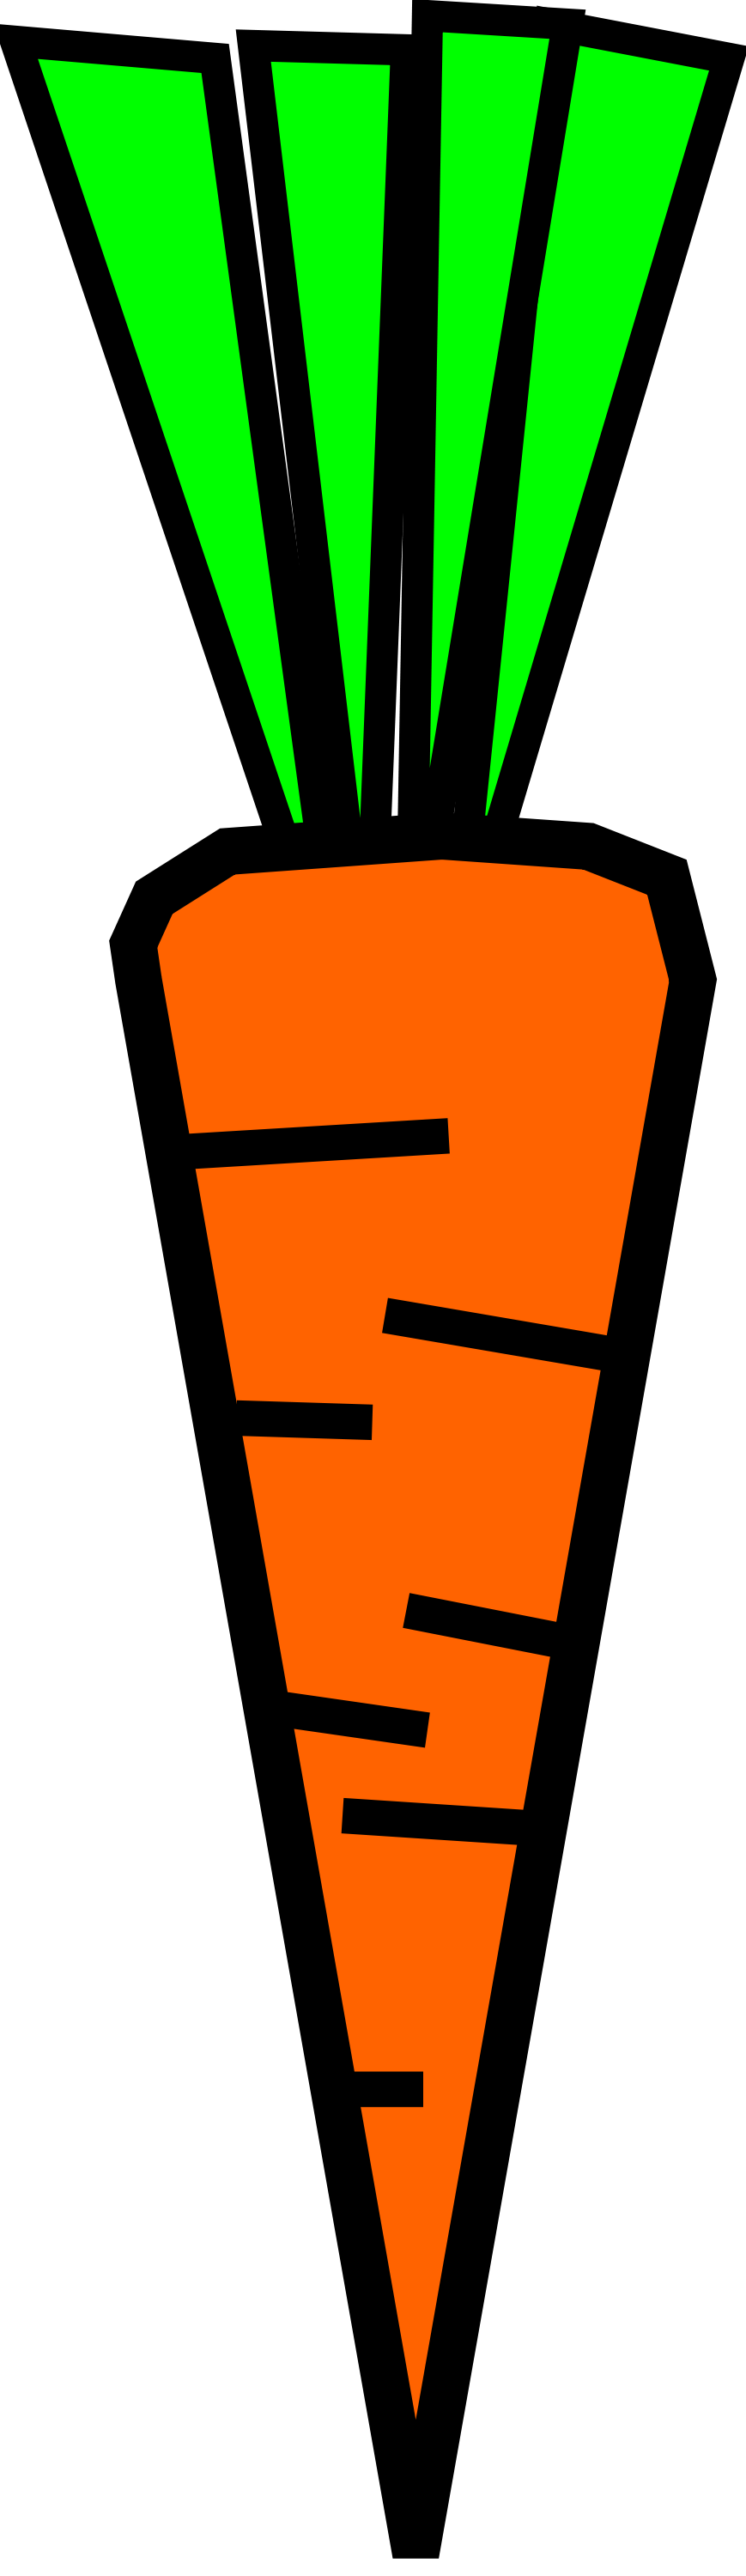 Orange Clipart Carrots Orange Carrots Transparent Free For Download On Webstockreview 2020